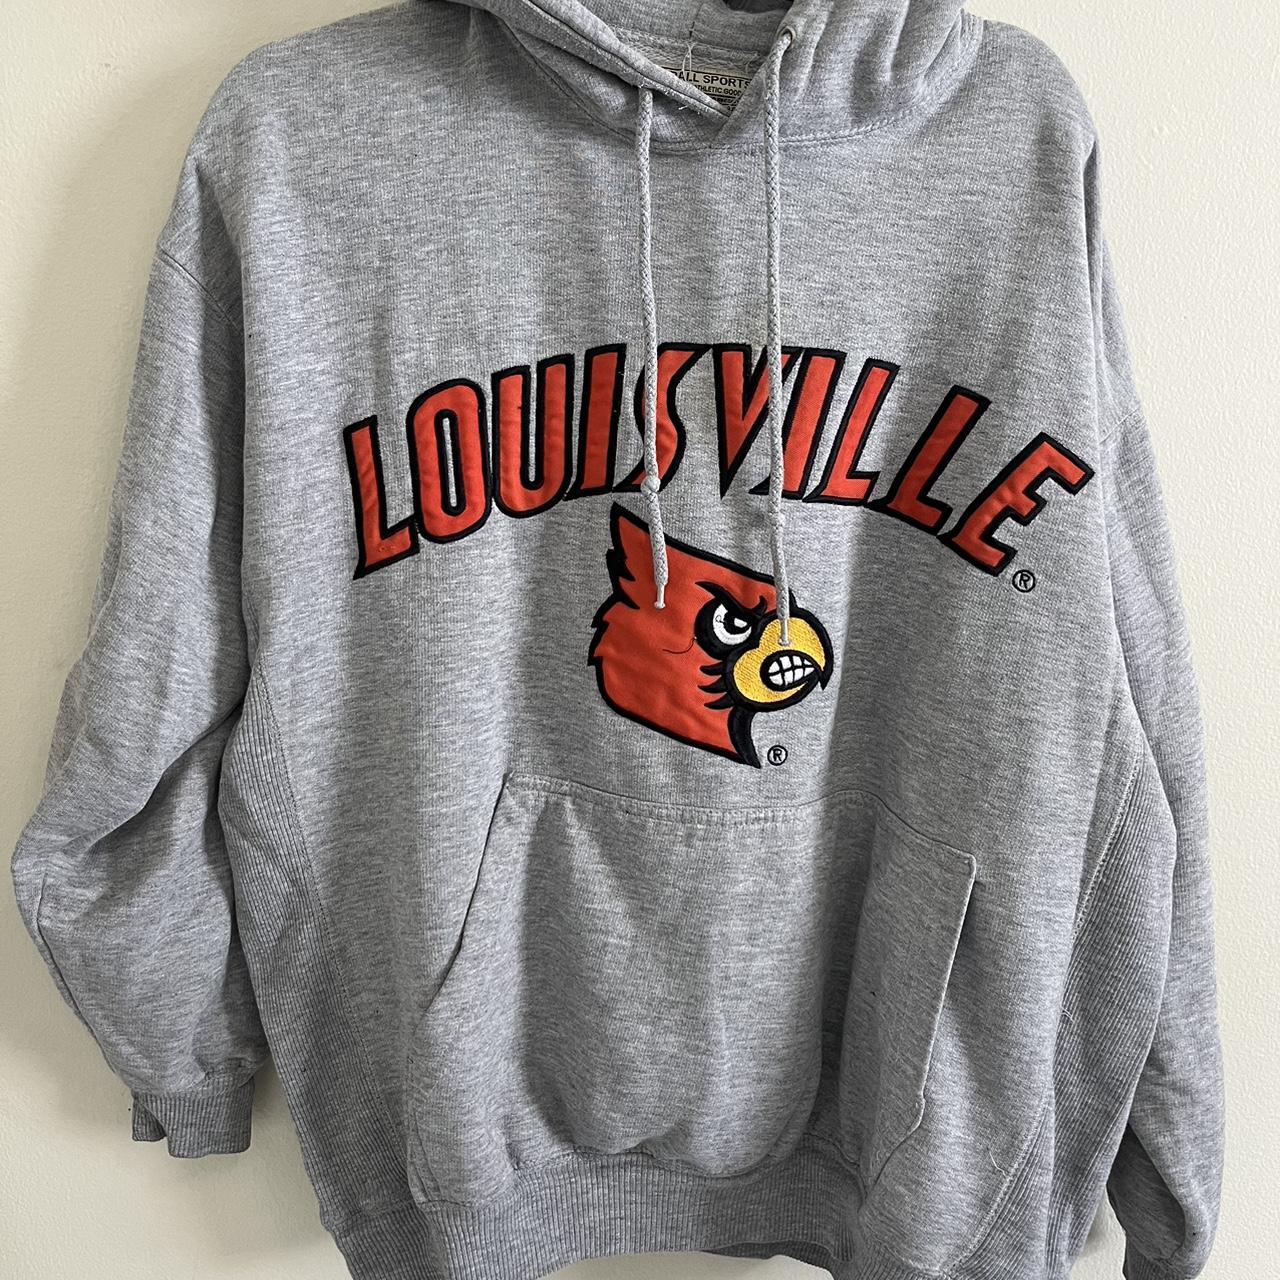 vintage louisville cardinals hoodie